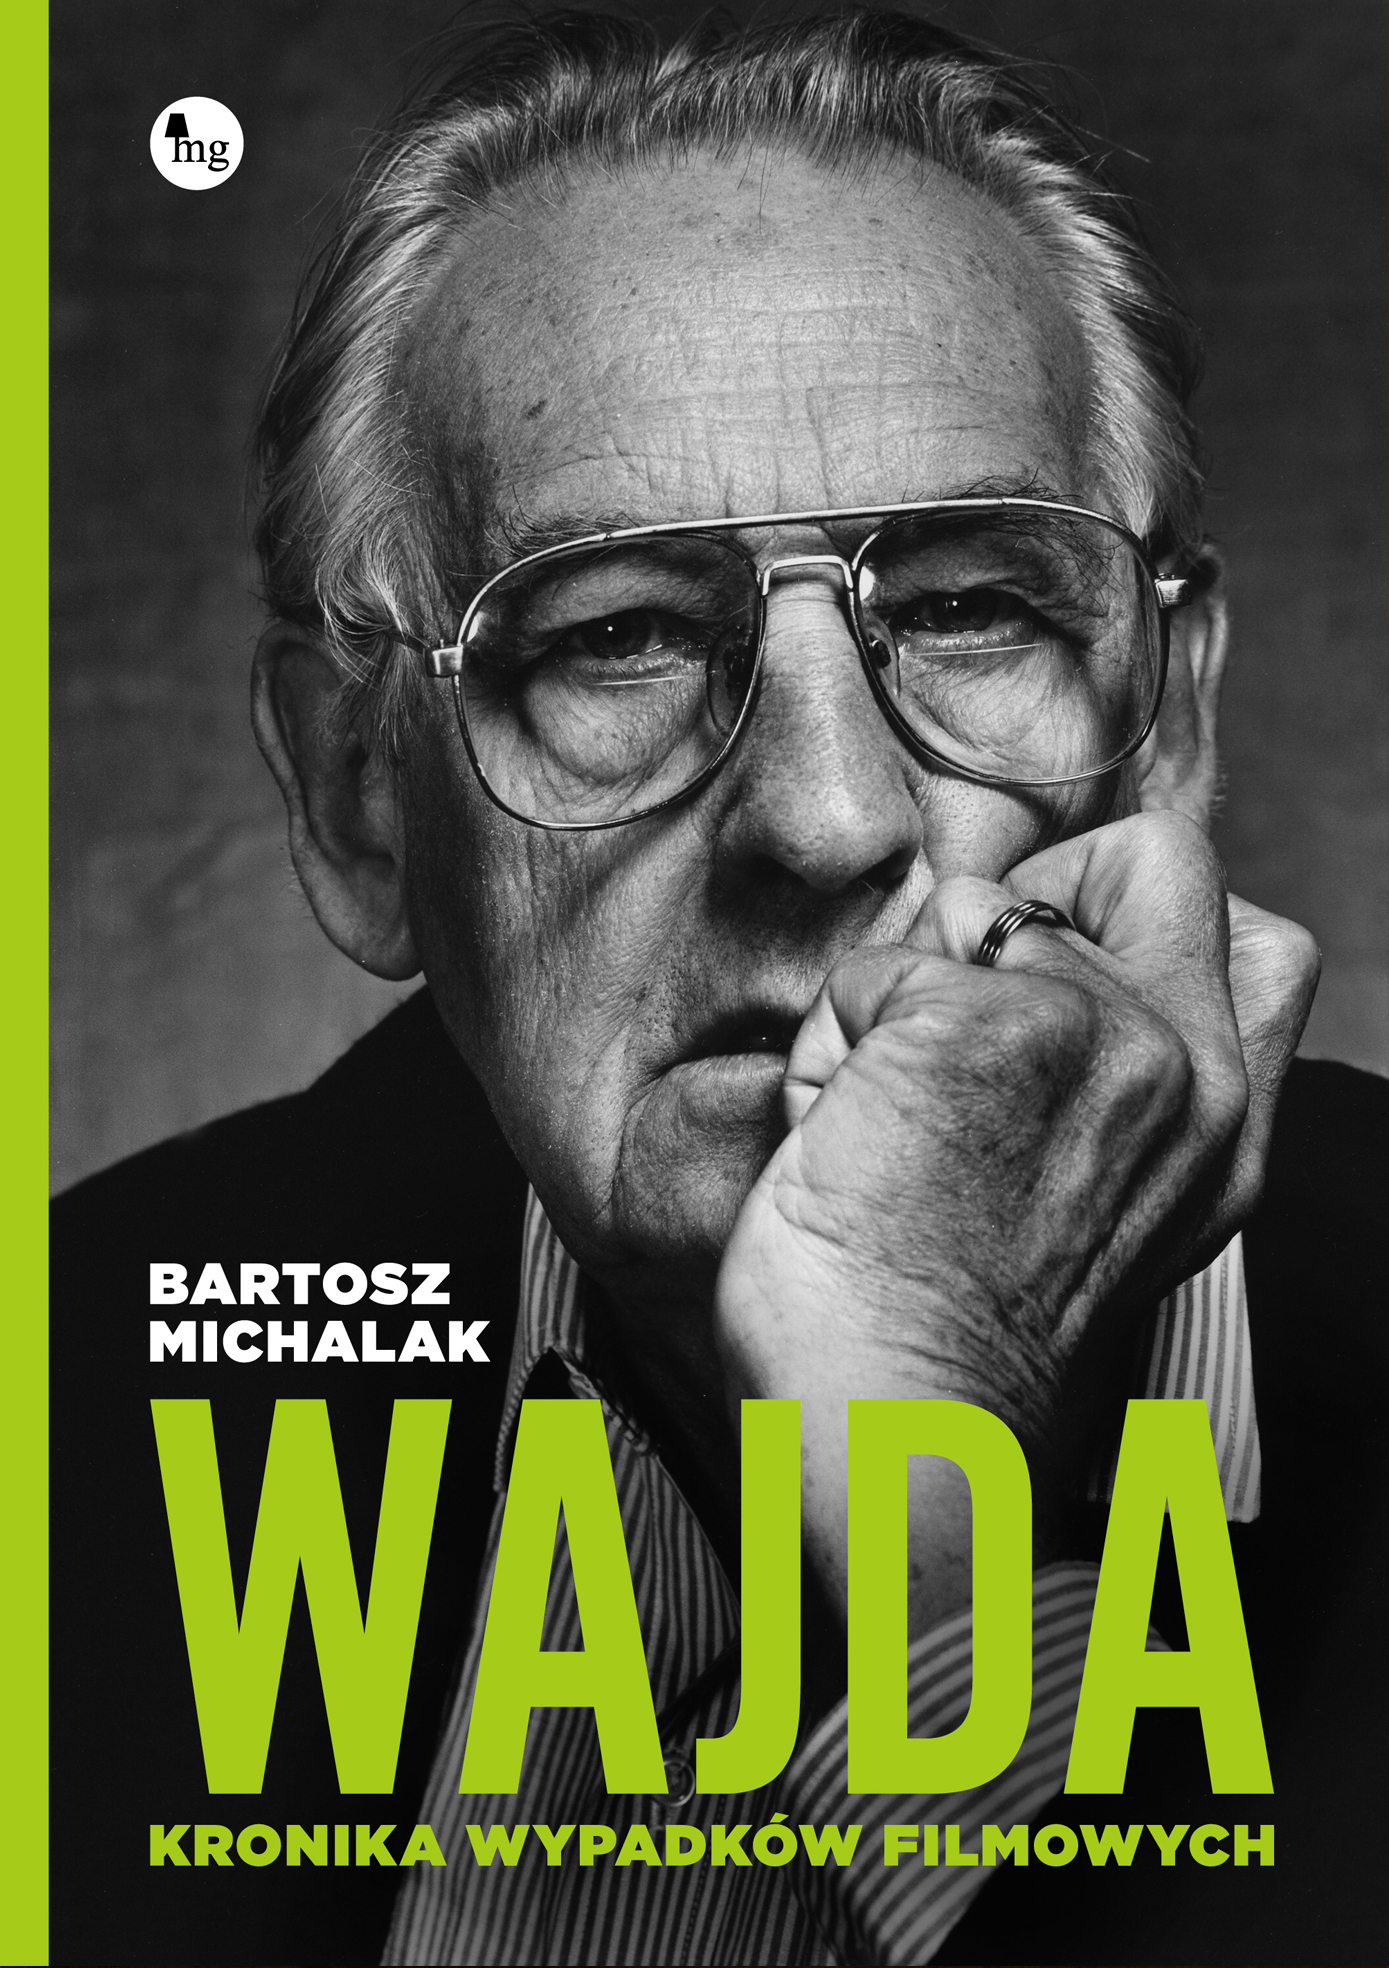 Bartosz Michalak, „Wajda. Kronika wypadków filmowych”, okładka (źródło: materiały prasowe wydawcy)